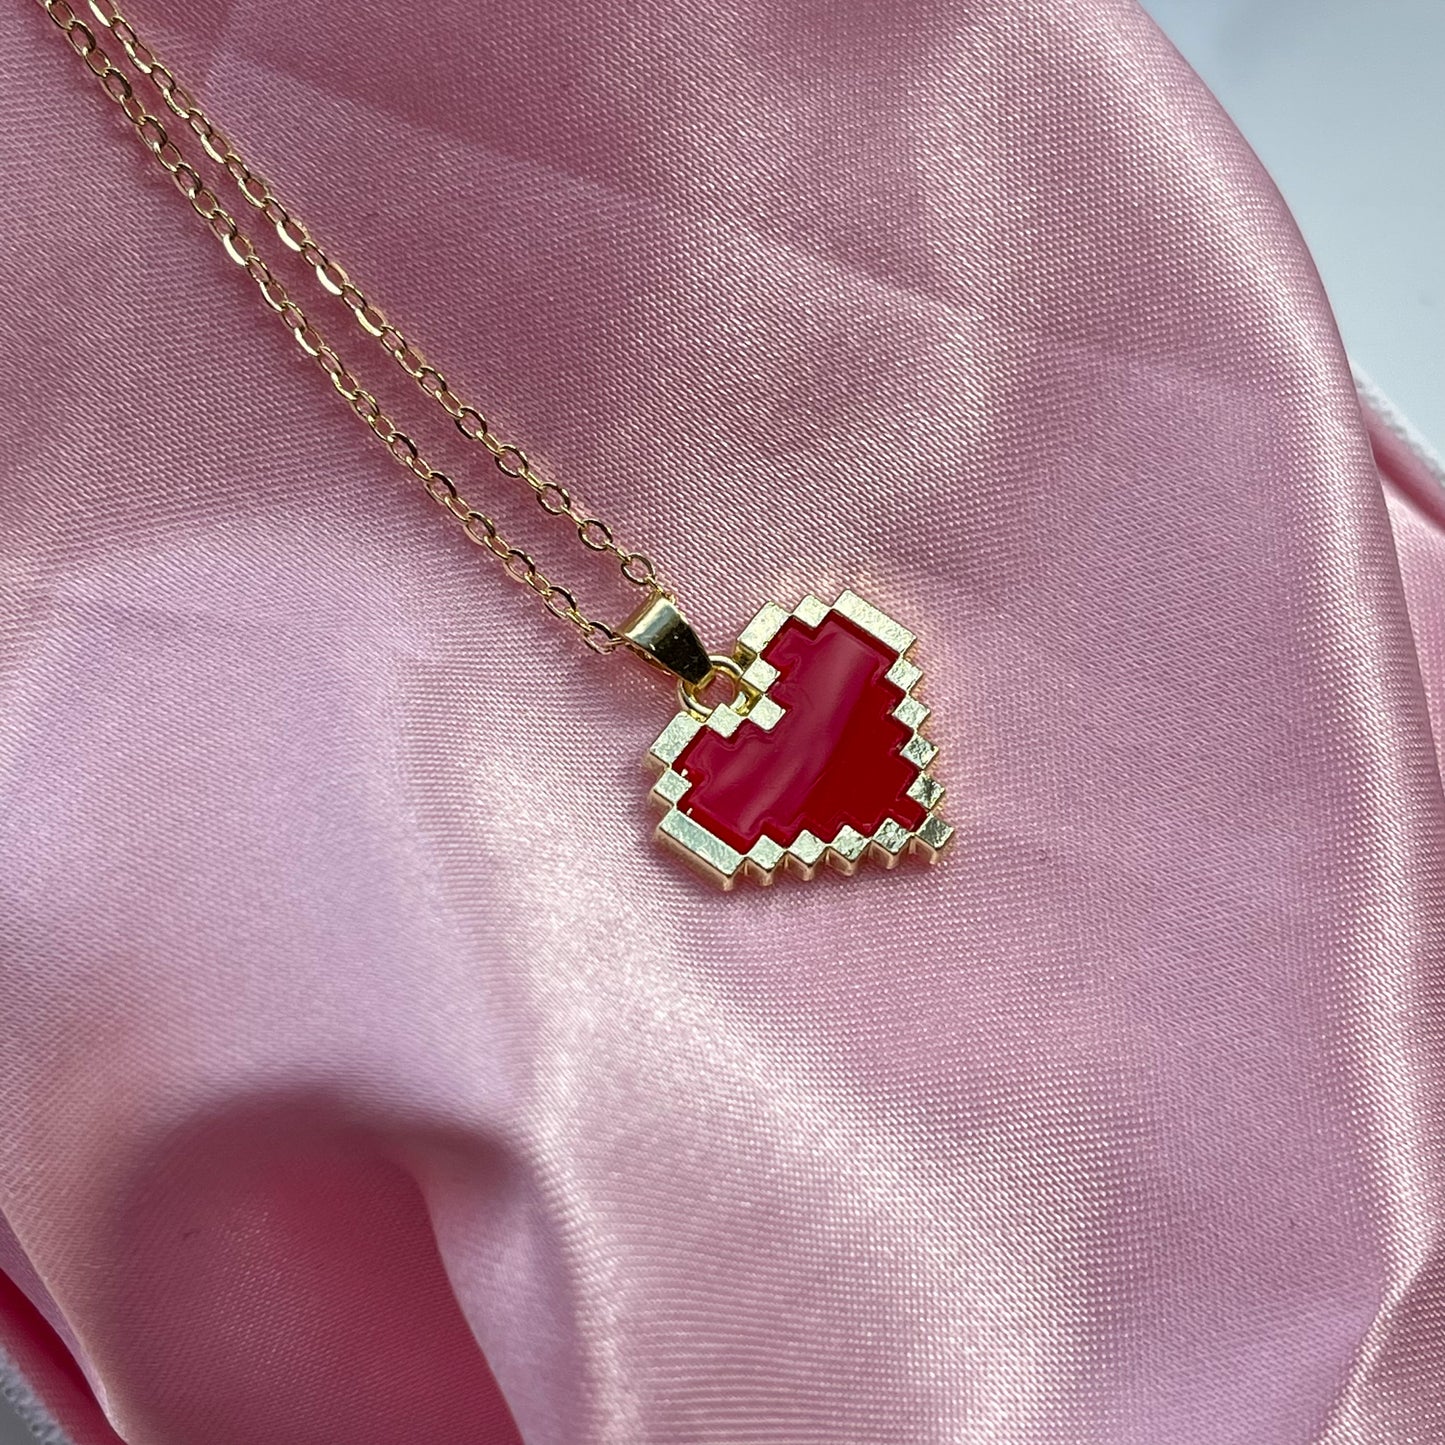 8-bit Heart Pendant Necklace - Lxyclr Authentic